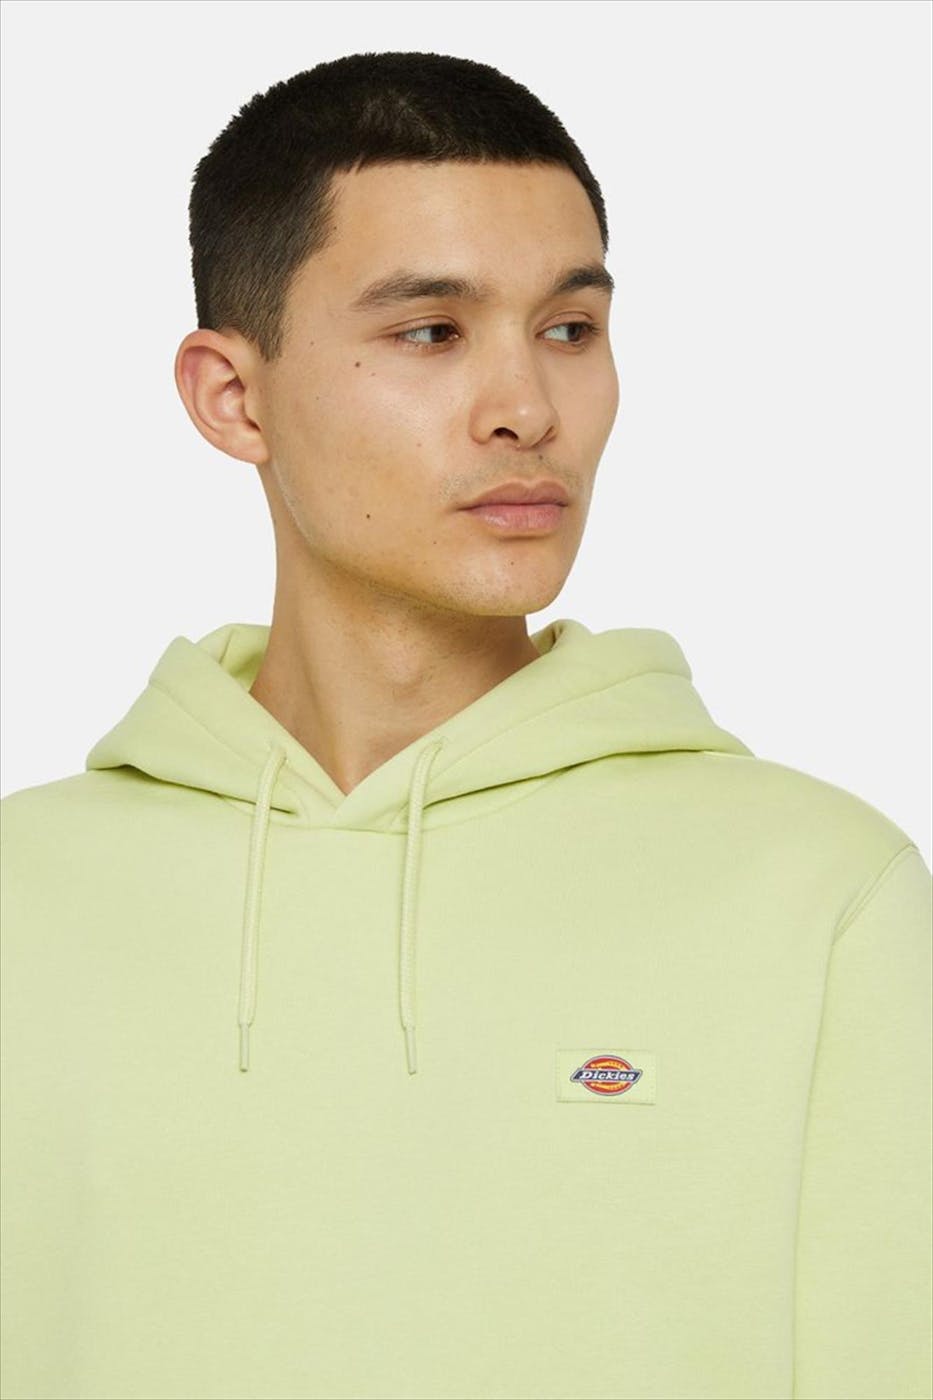 Dickies - Lichtgroene Oakport hoodie